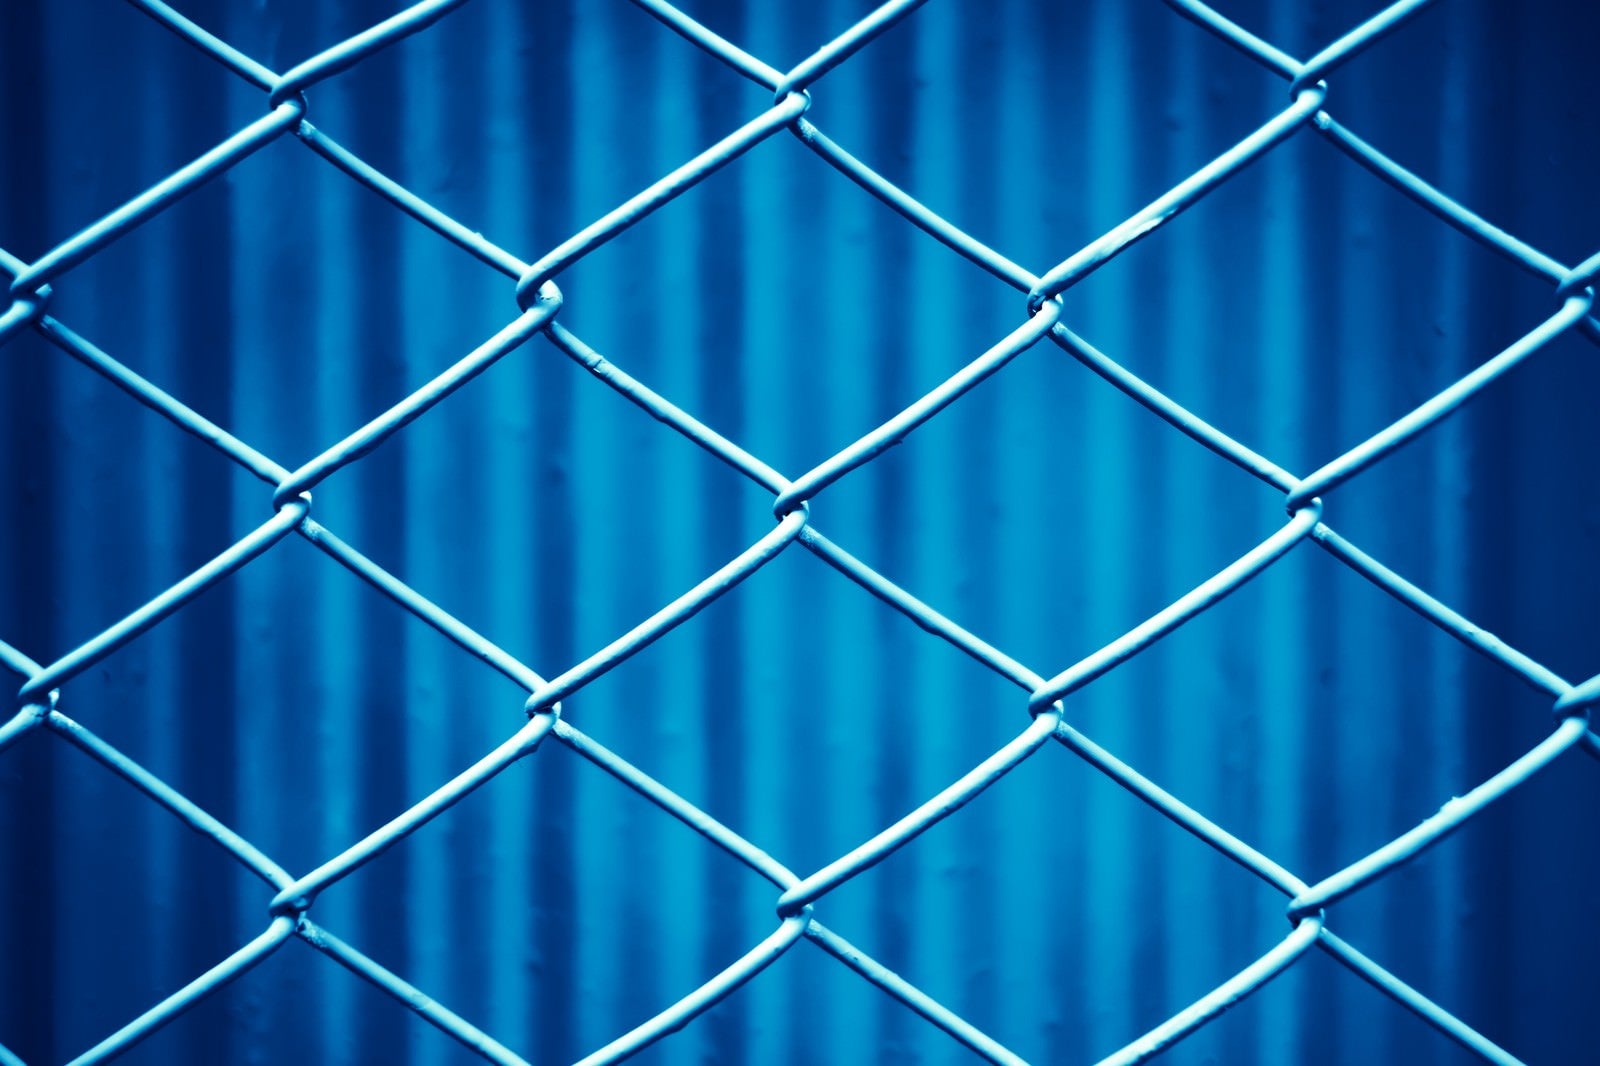 「青いネットフェンス」の写真